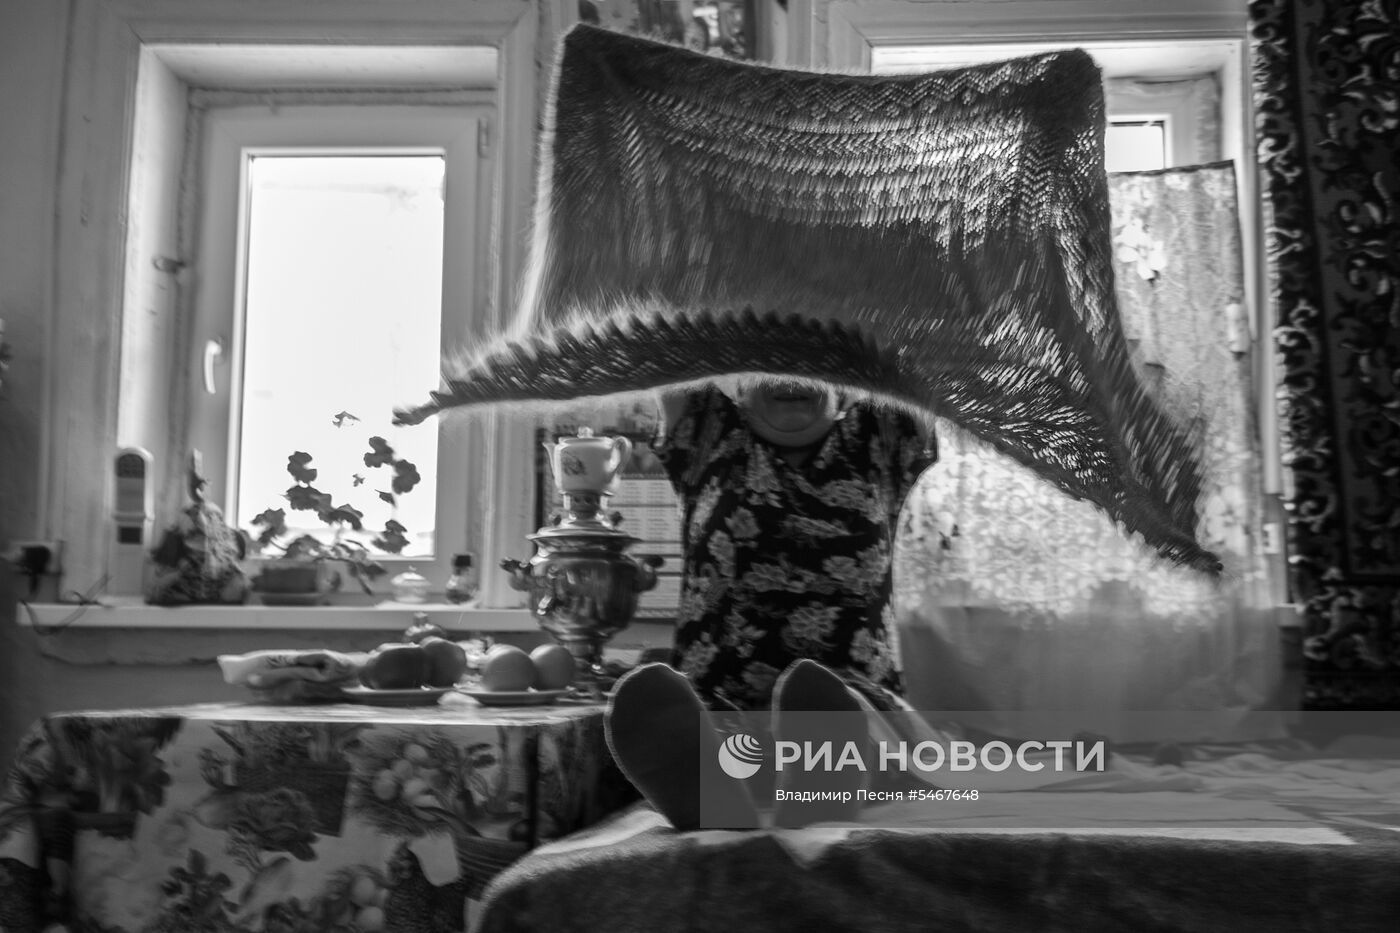 Фотокорреспондент МИА "Россия сегодня" В. Песня получил особую отметку жюри на фотоконкурсе NPPA